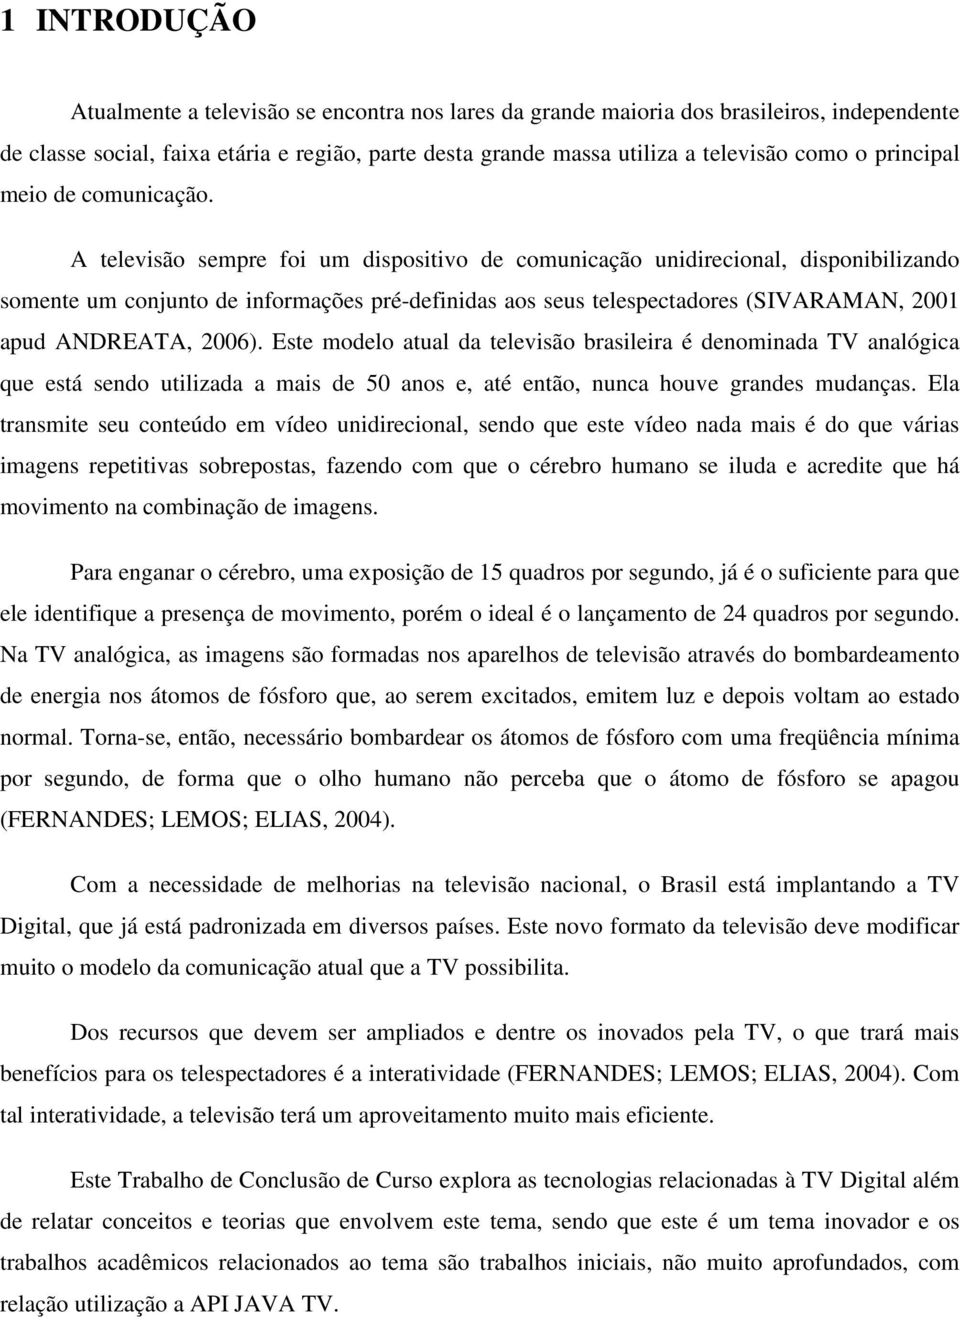 A televisão sempre foi um dispositivo de comunicação unidirecional, disponibilizando somente um conjunto de informações pré-definidas aos seus telespectadores (SIVARAMAN, 2001 apud ANDREATA, 2006).